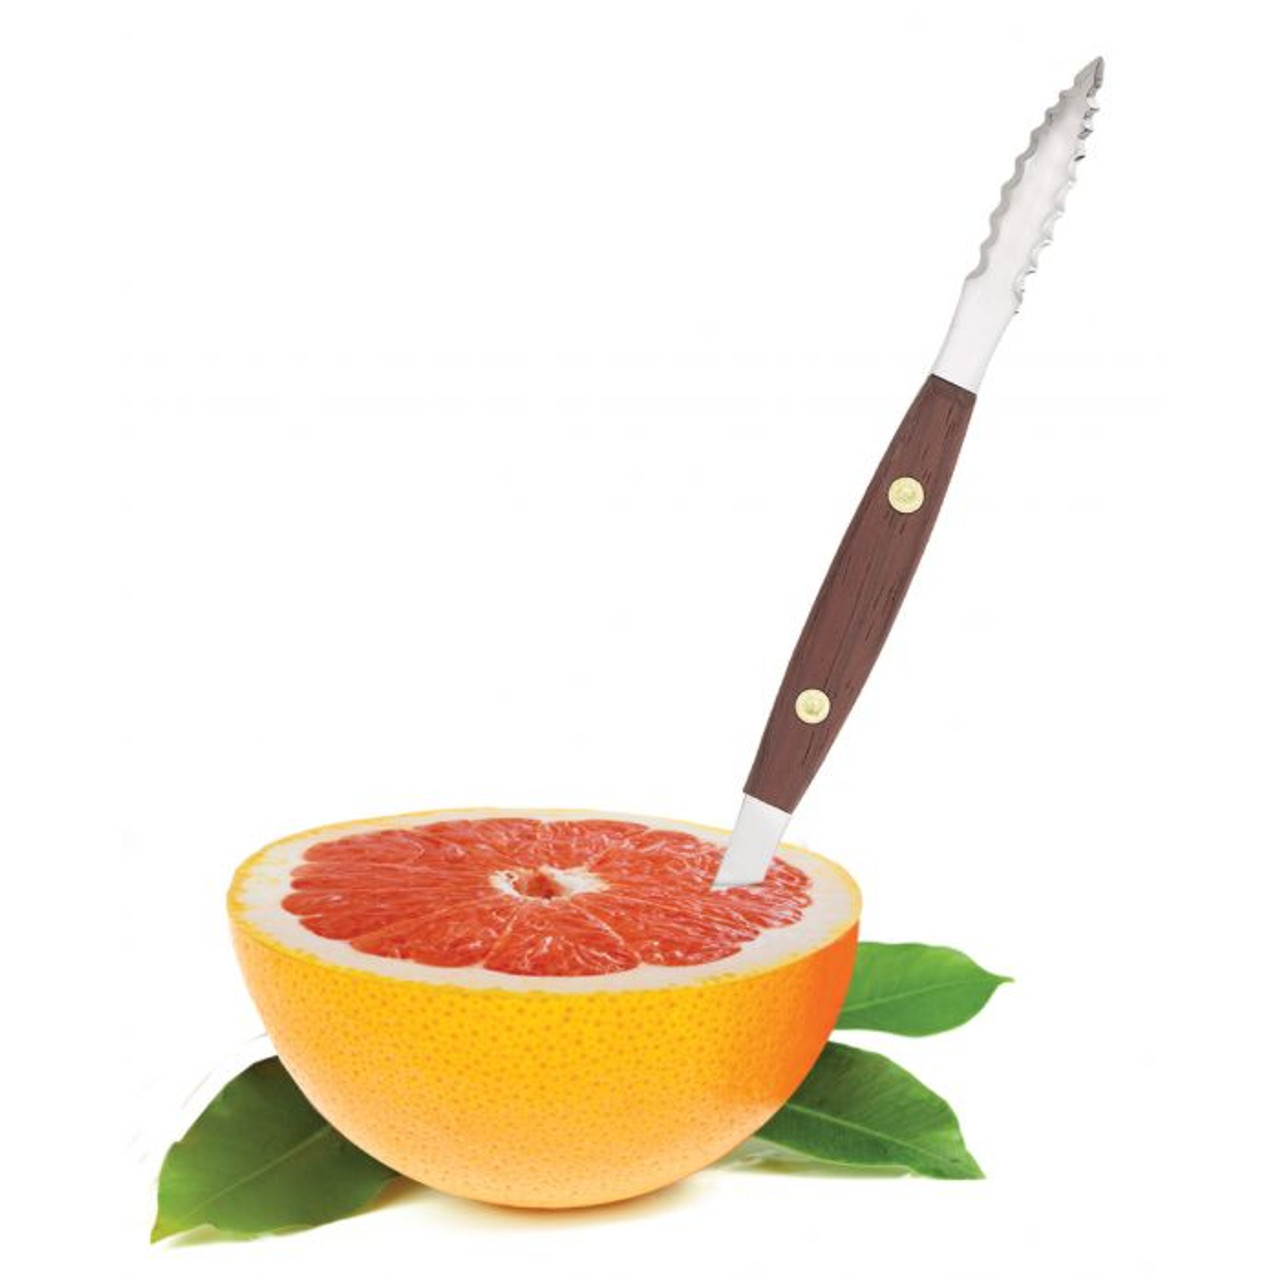 Grapefruit Knife Classic – The Seasoned Gourmet